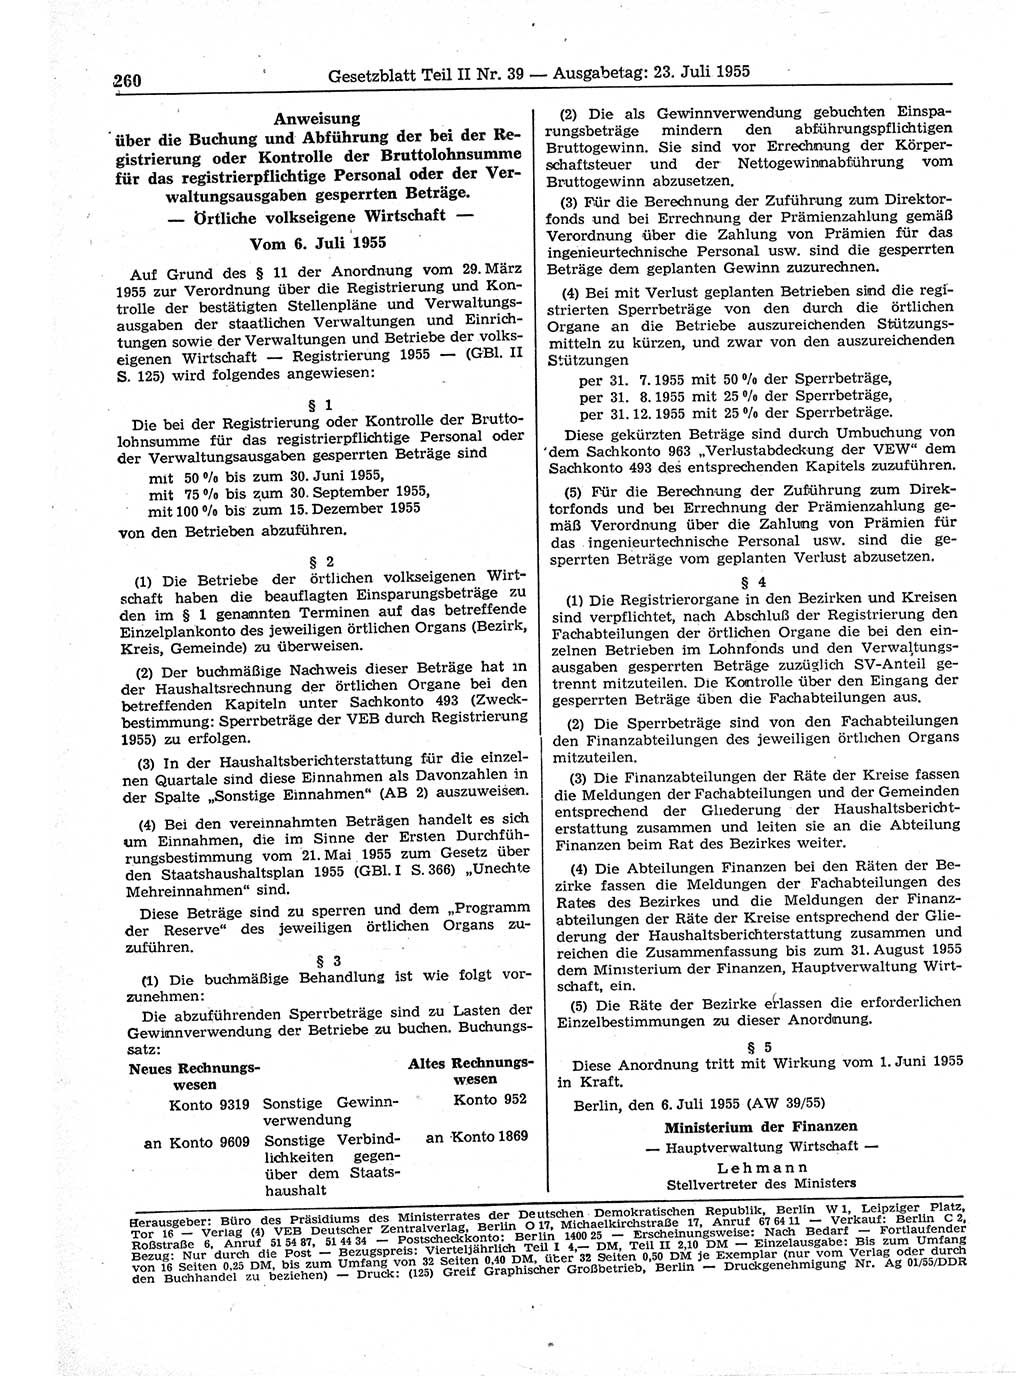 Gesetzblatt (GBl.) der Deutschen Demokratischen Republik (DDR) Teil ⅠⅠ 1955, Seite 260 (GBl. DDR ⅠⅠ 1955, S. 260)